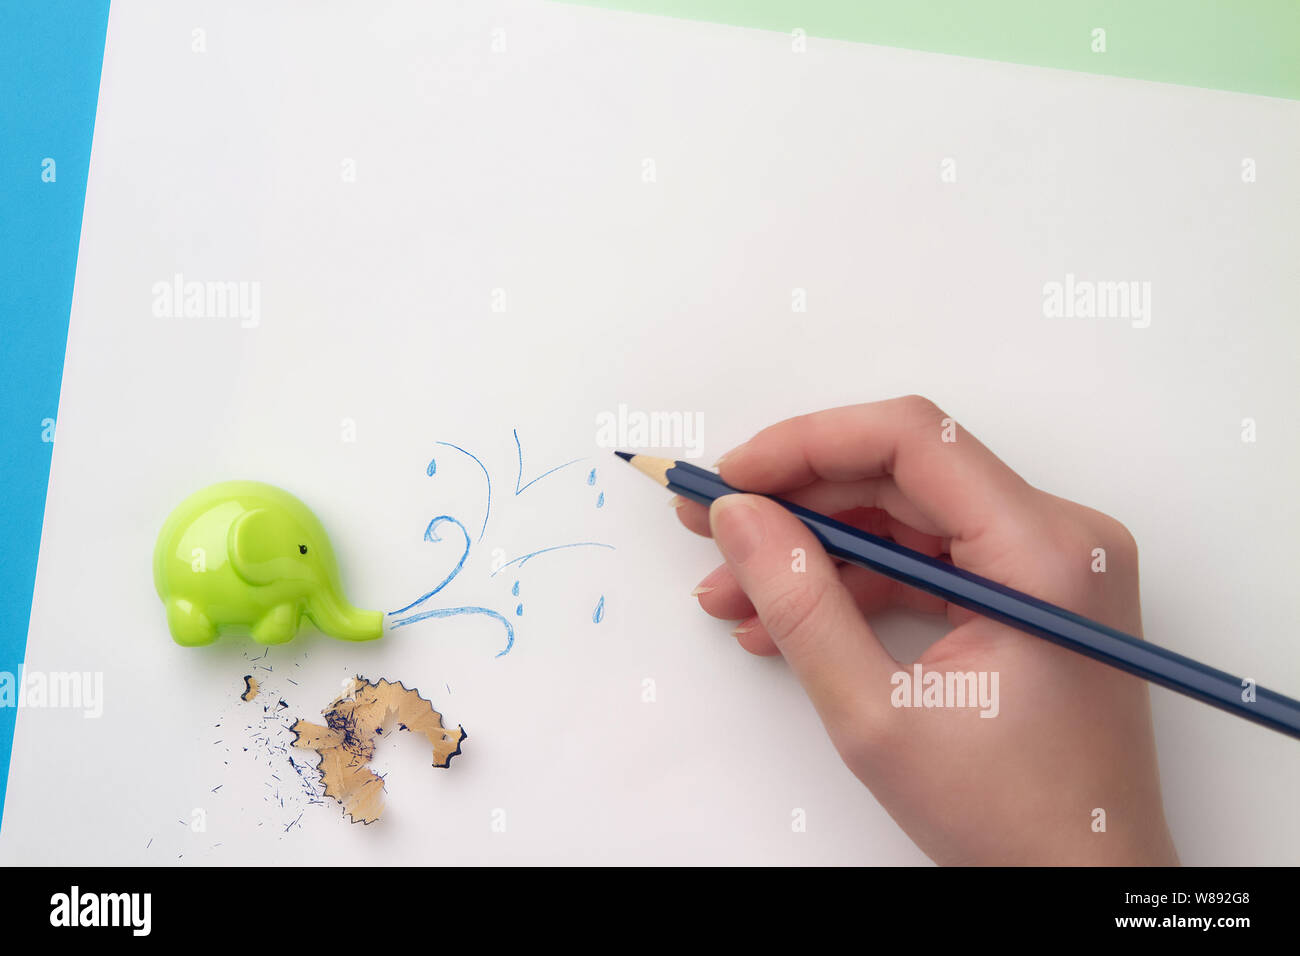 Mignon taille-crayon d'enfants sous forme d'éléphant, main avec un crayon bleu dessinant un jet d'eau et un crayon limaille.Pose à plat Banque D'Images